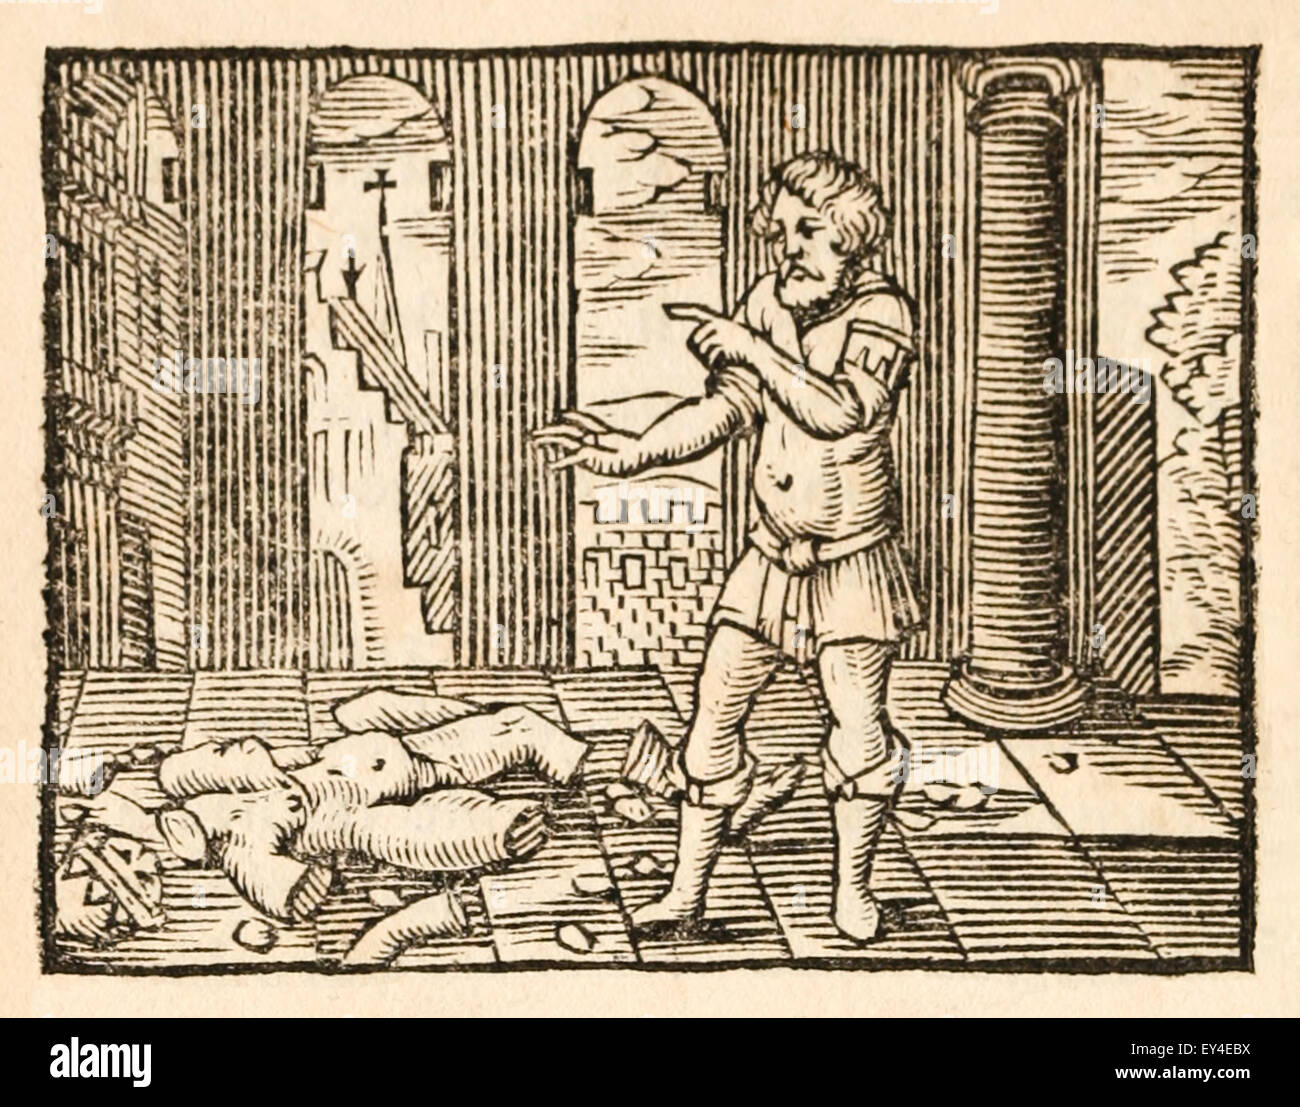 'Le Statut d'Hermès et le Trésor' fable d'Ésope (vers 600 avant JC). 17e siècle gravure sur bois illustrant les Fables d'Ésope. Voir la description pour plus d'informations. Banque D'Images